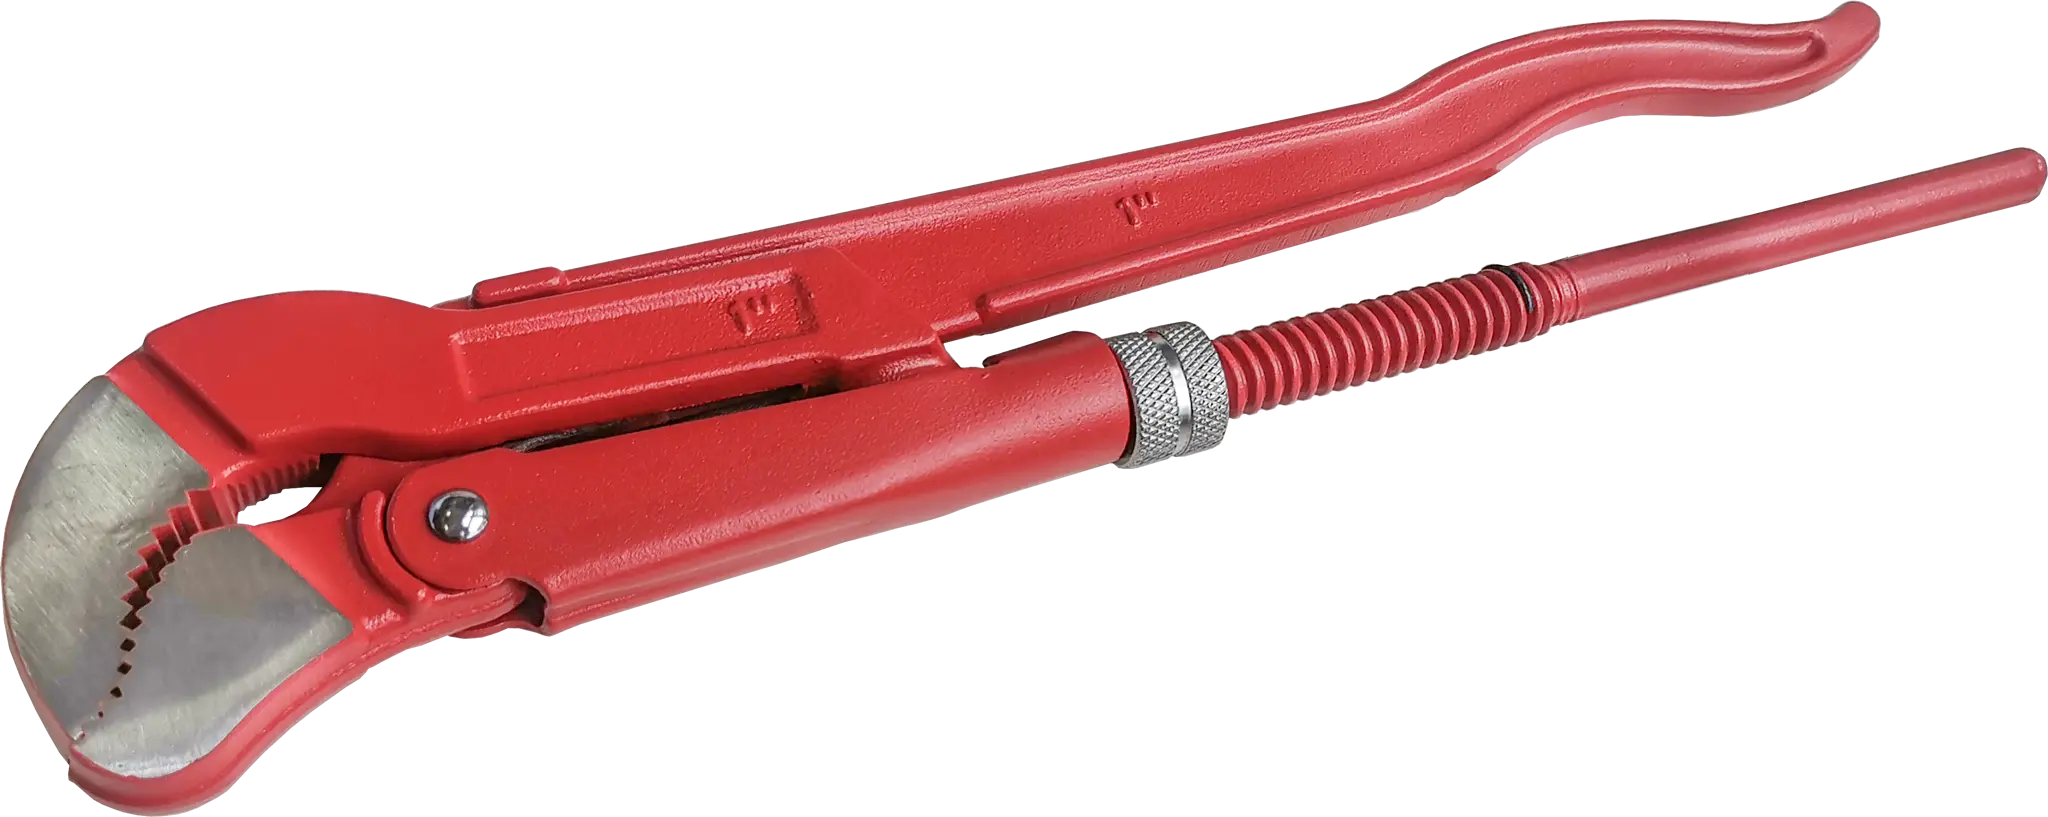 Ключ трубный газовый рычажный S 1045.0254 захват 25 мм, длина 320 мм